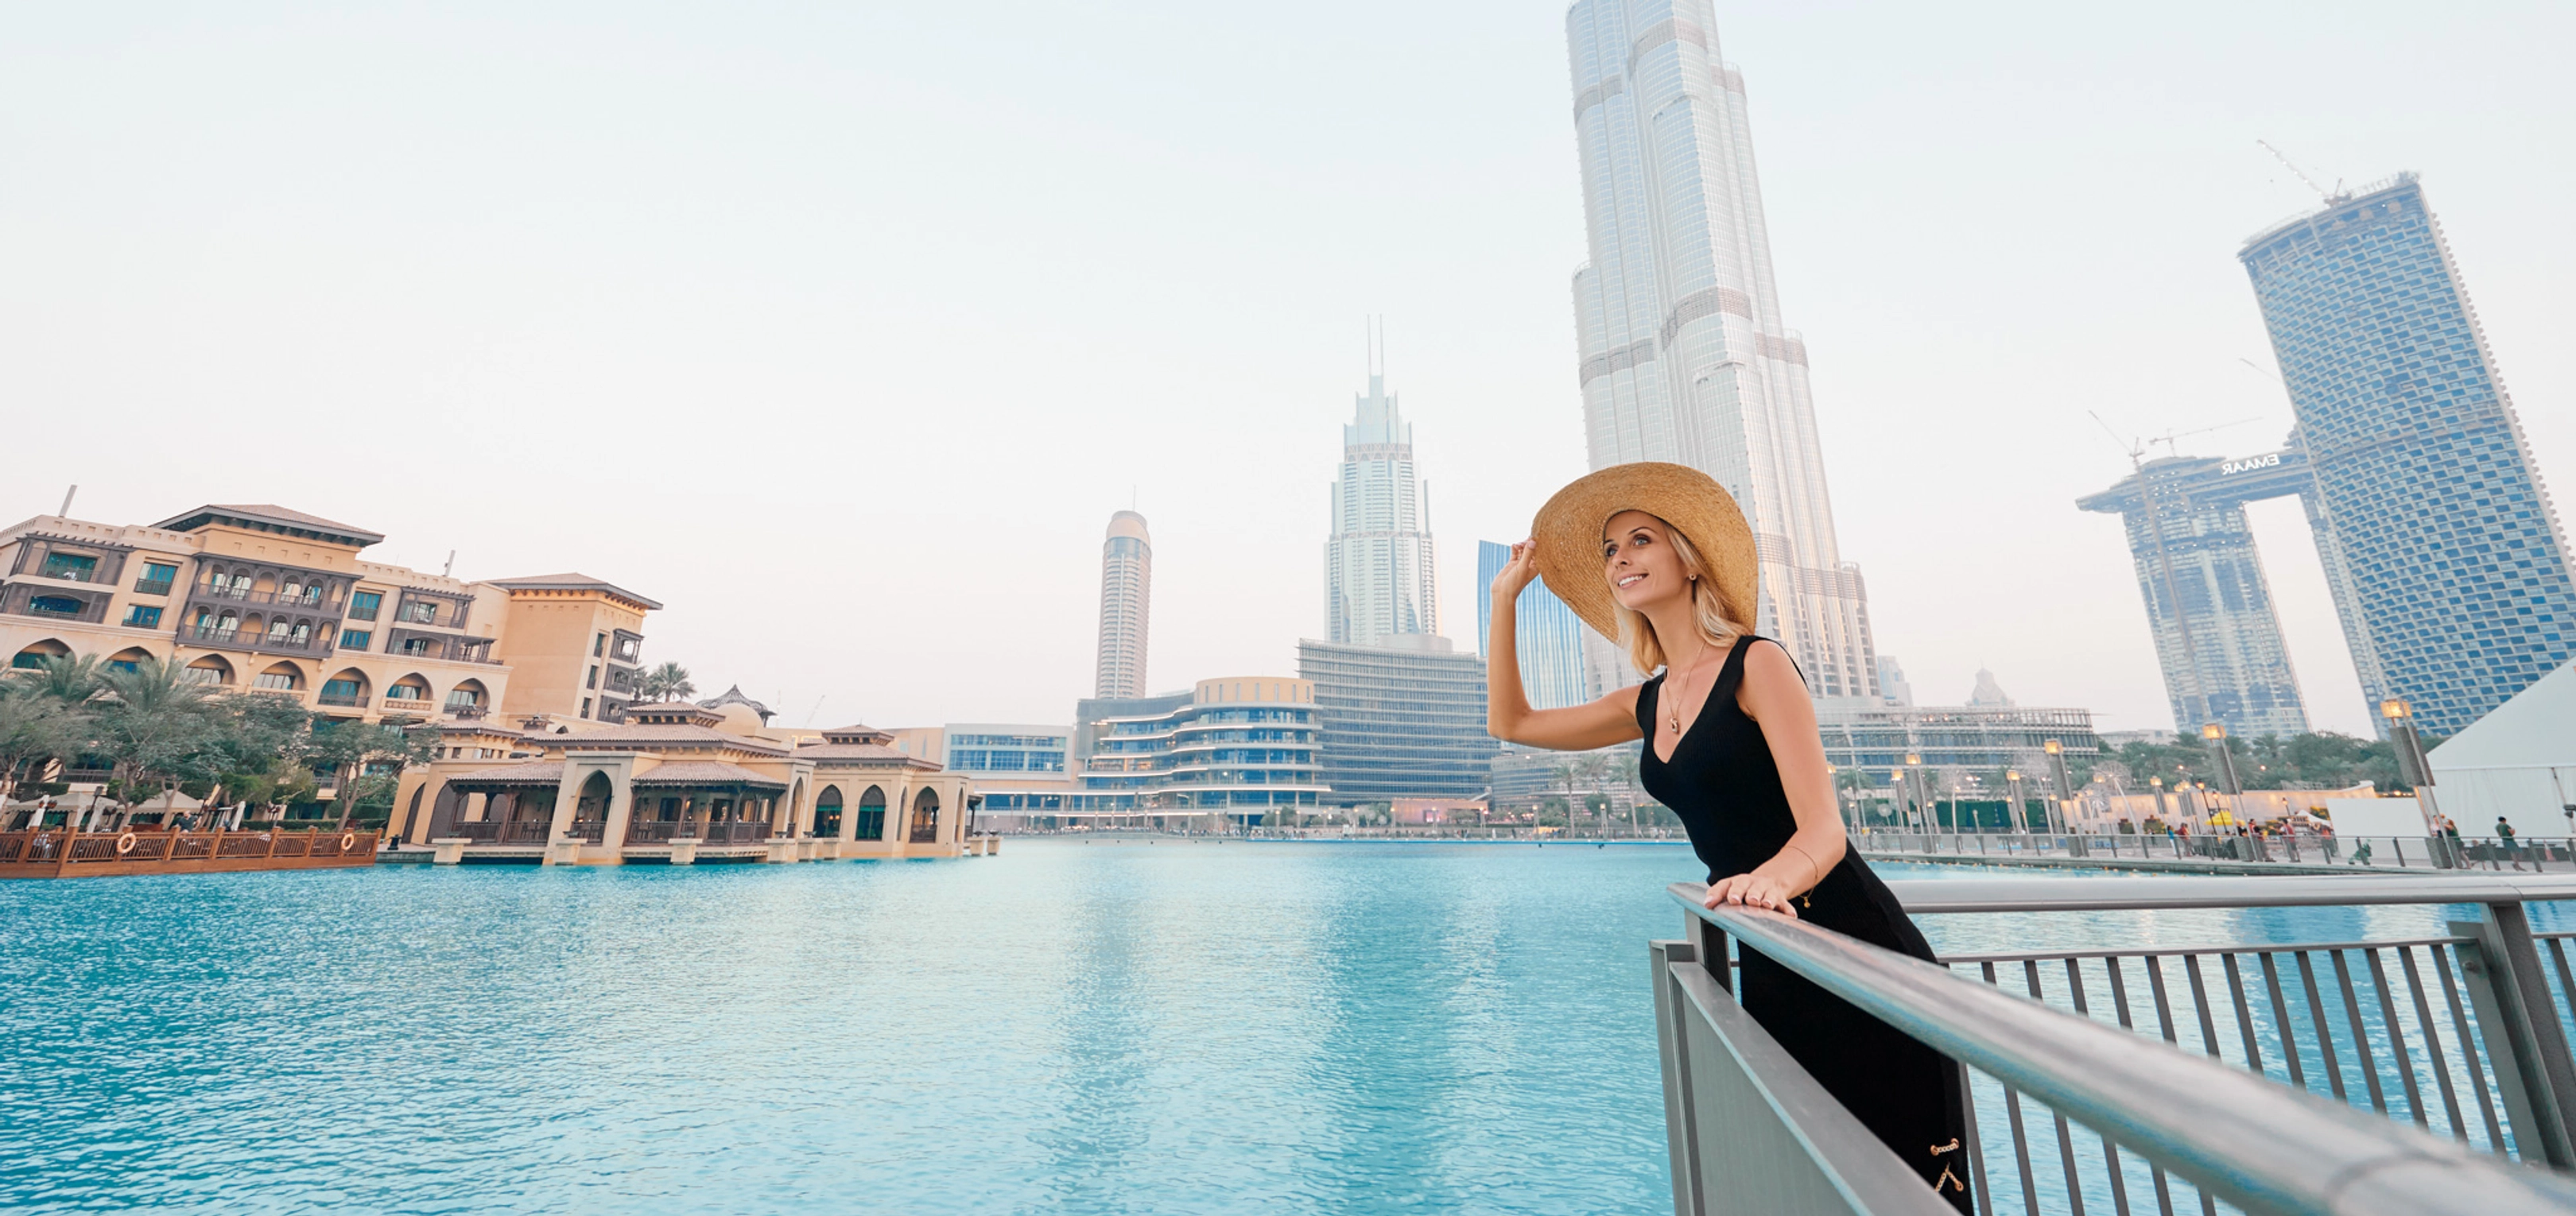 Capture sus recuerdos en Dubai